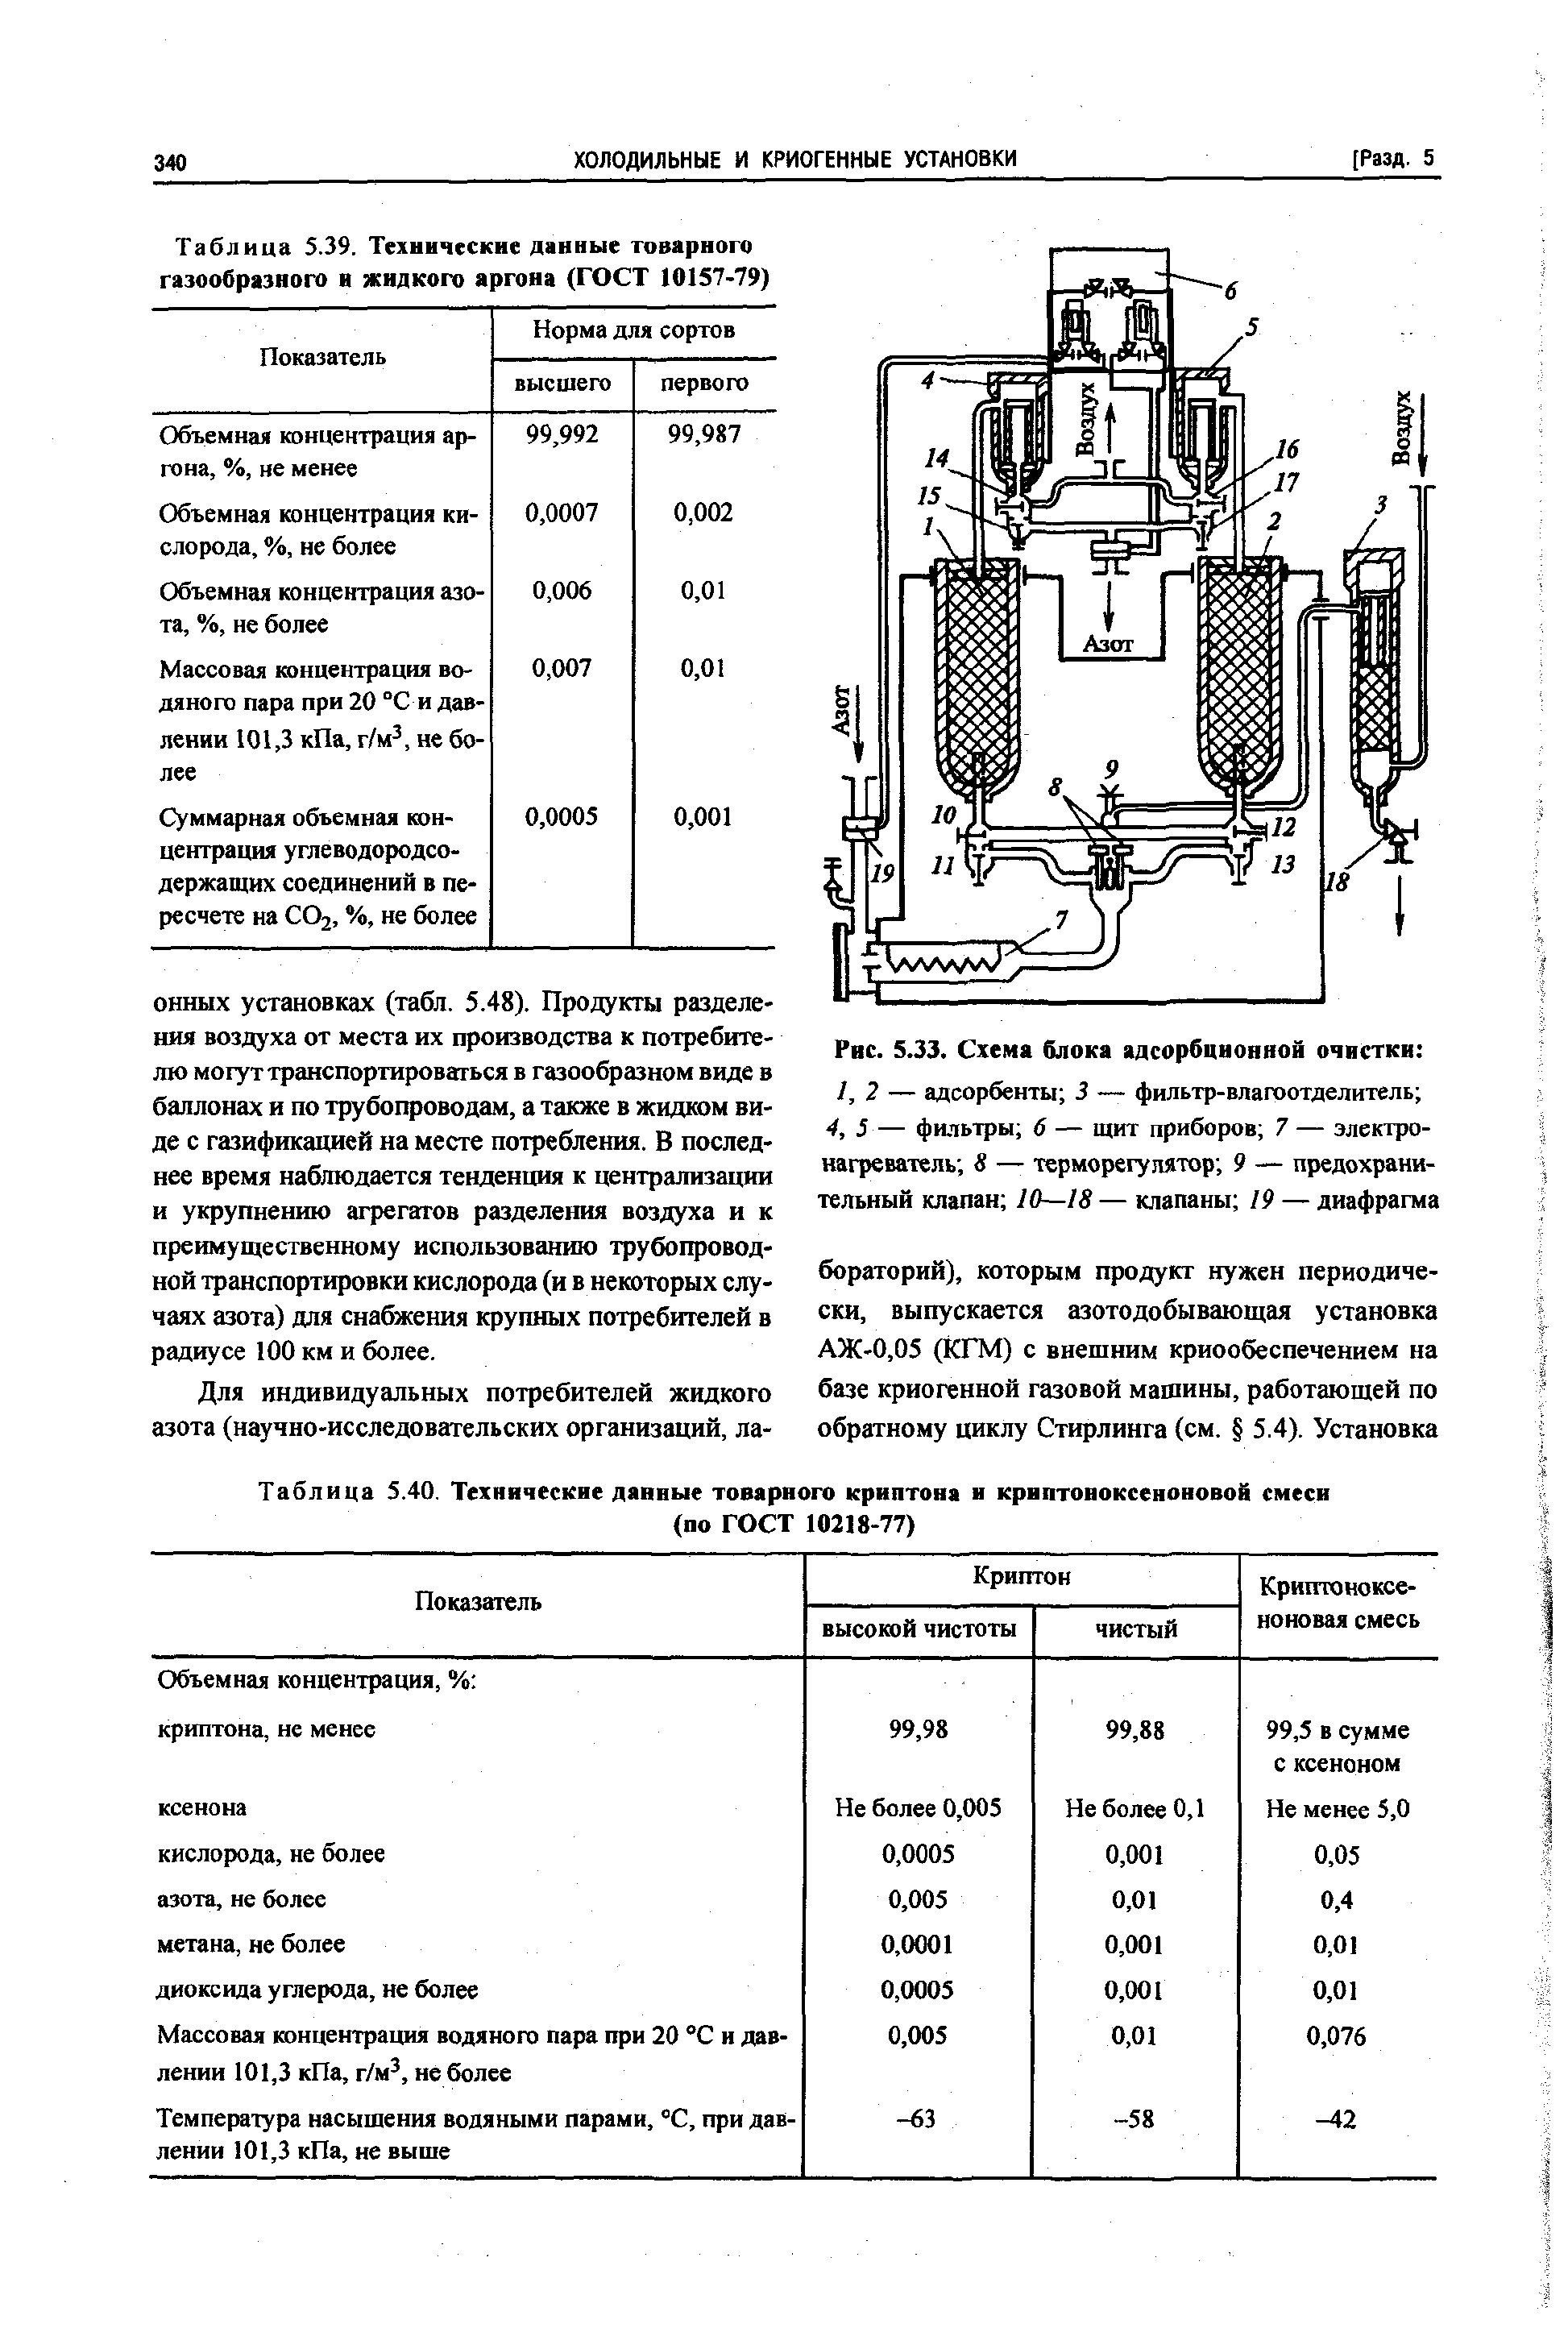 Таблица S.40. Технические данные товарного криптона и криптоноксеноновой
